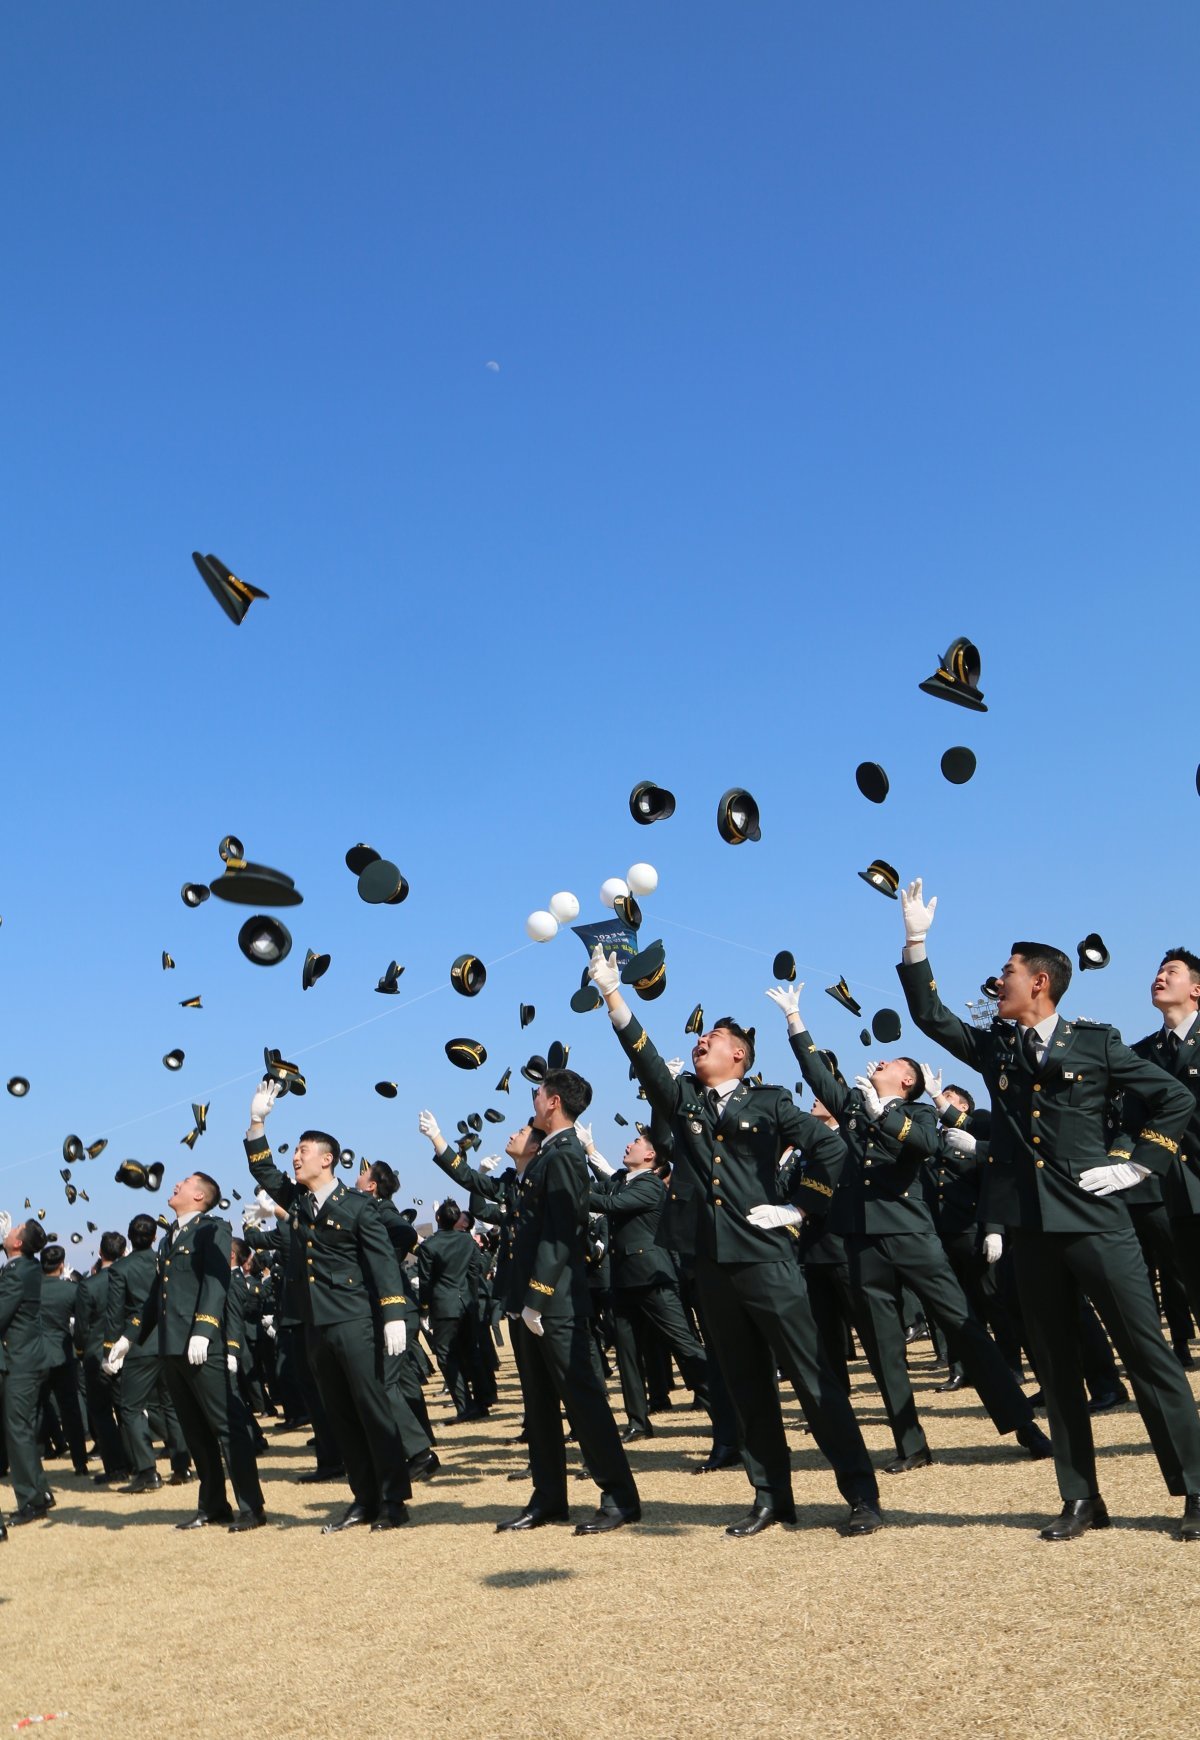 28일 충북 괴산 육군학생군사학교에서 열린 ‘2023년 학군장교(ROTC) 통합임관식’에서 소위로 임관한 학군장교들이 모자를 던지며 환호하고 있다.2023.02.28/뉴스1